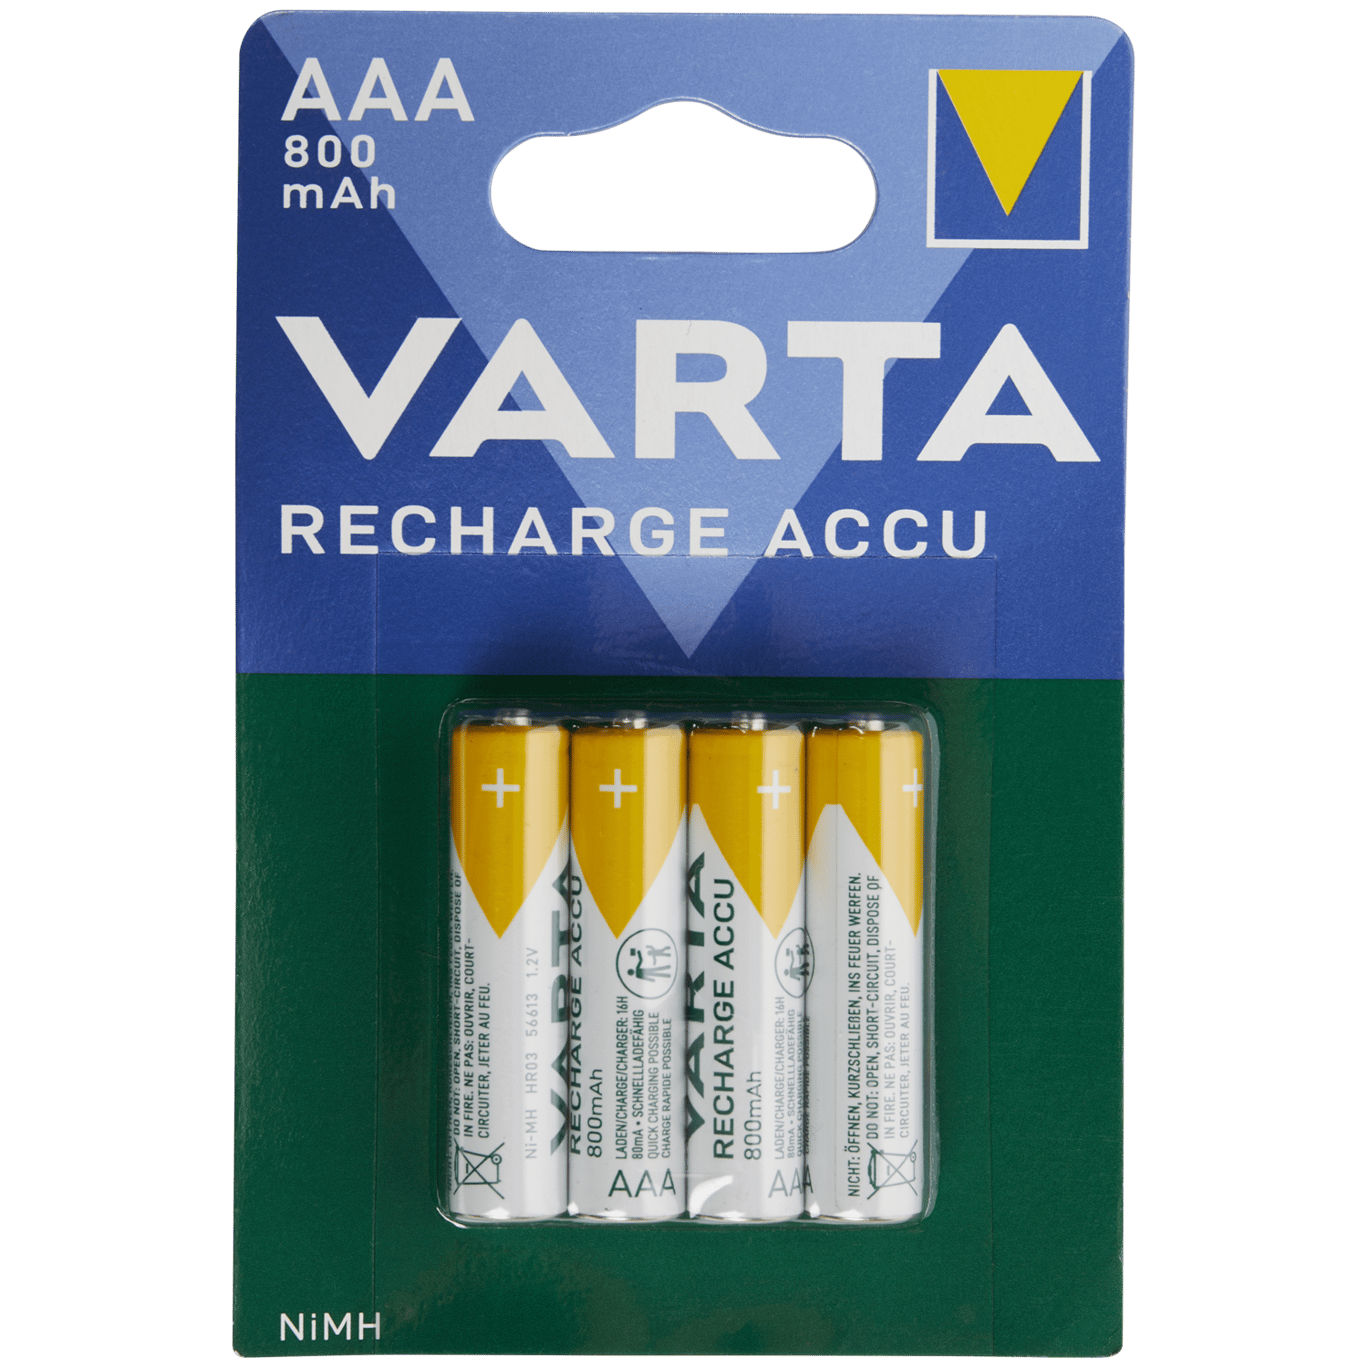 Batterie ricaricabili AAA Varta